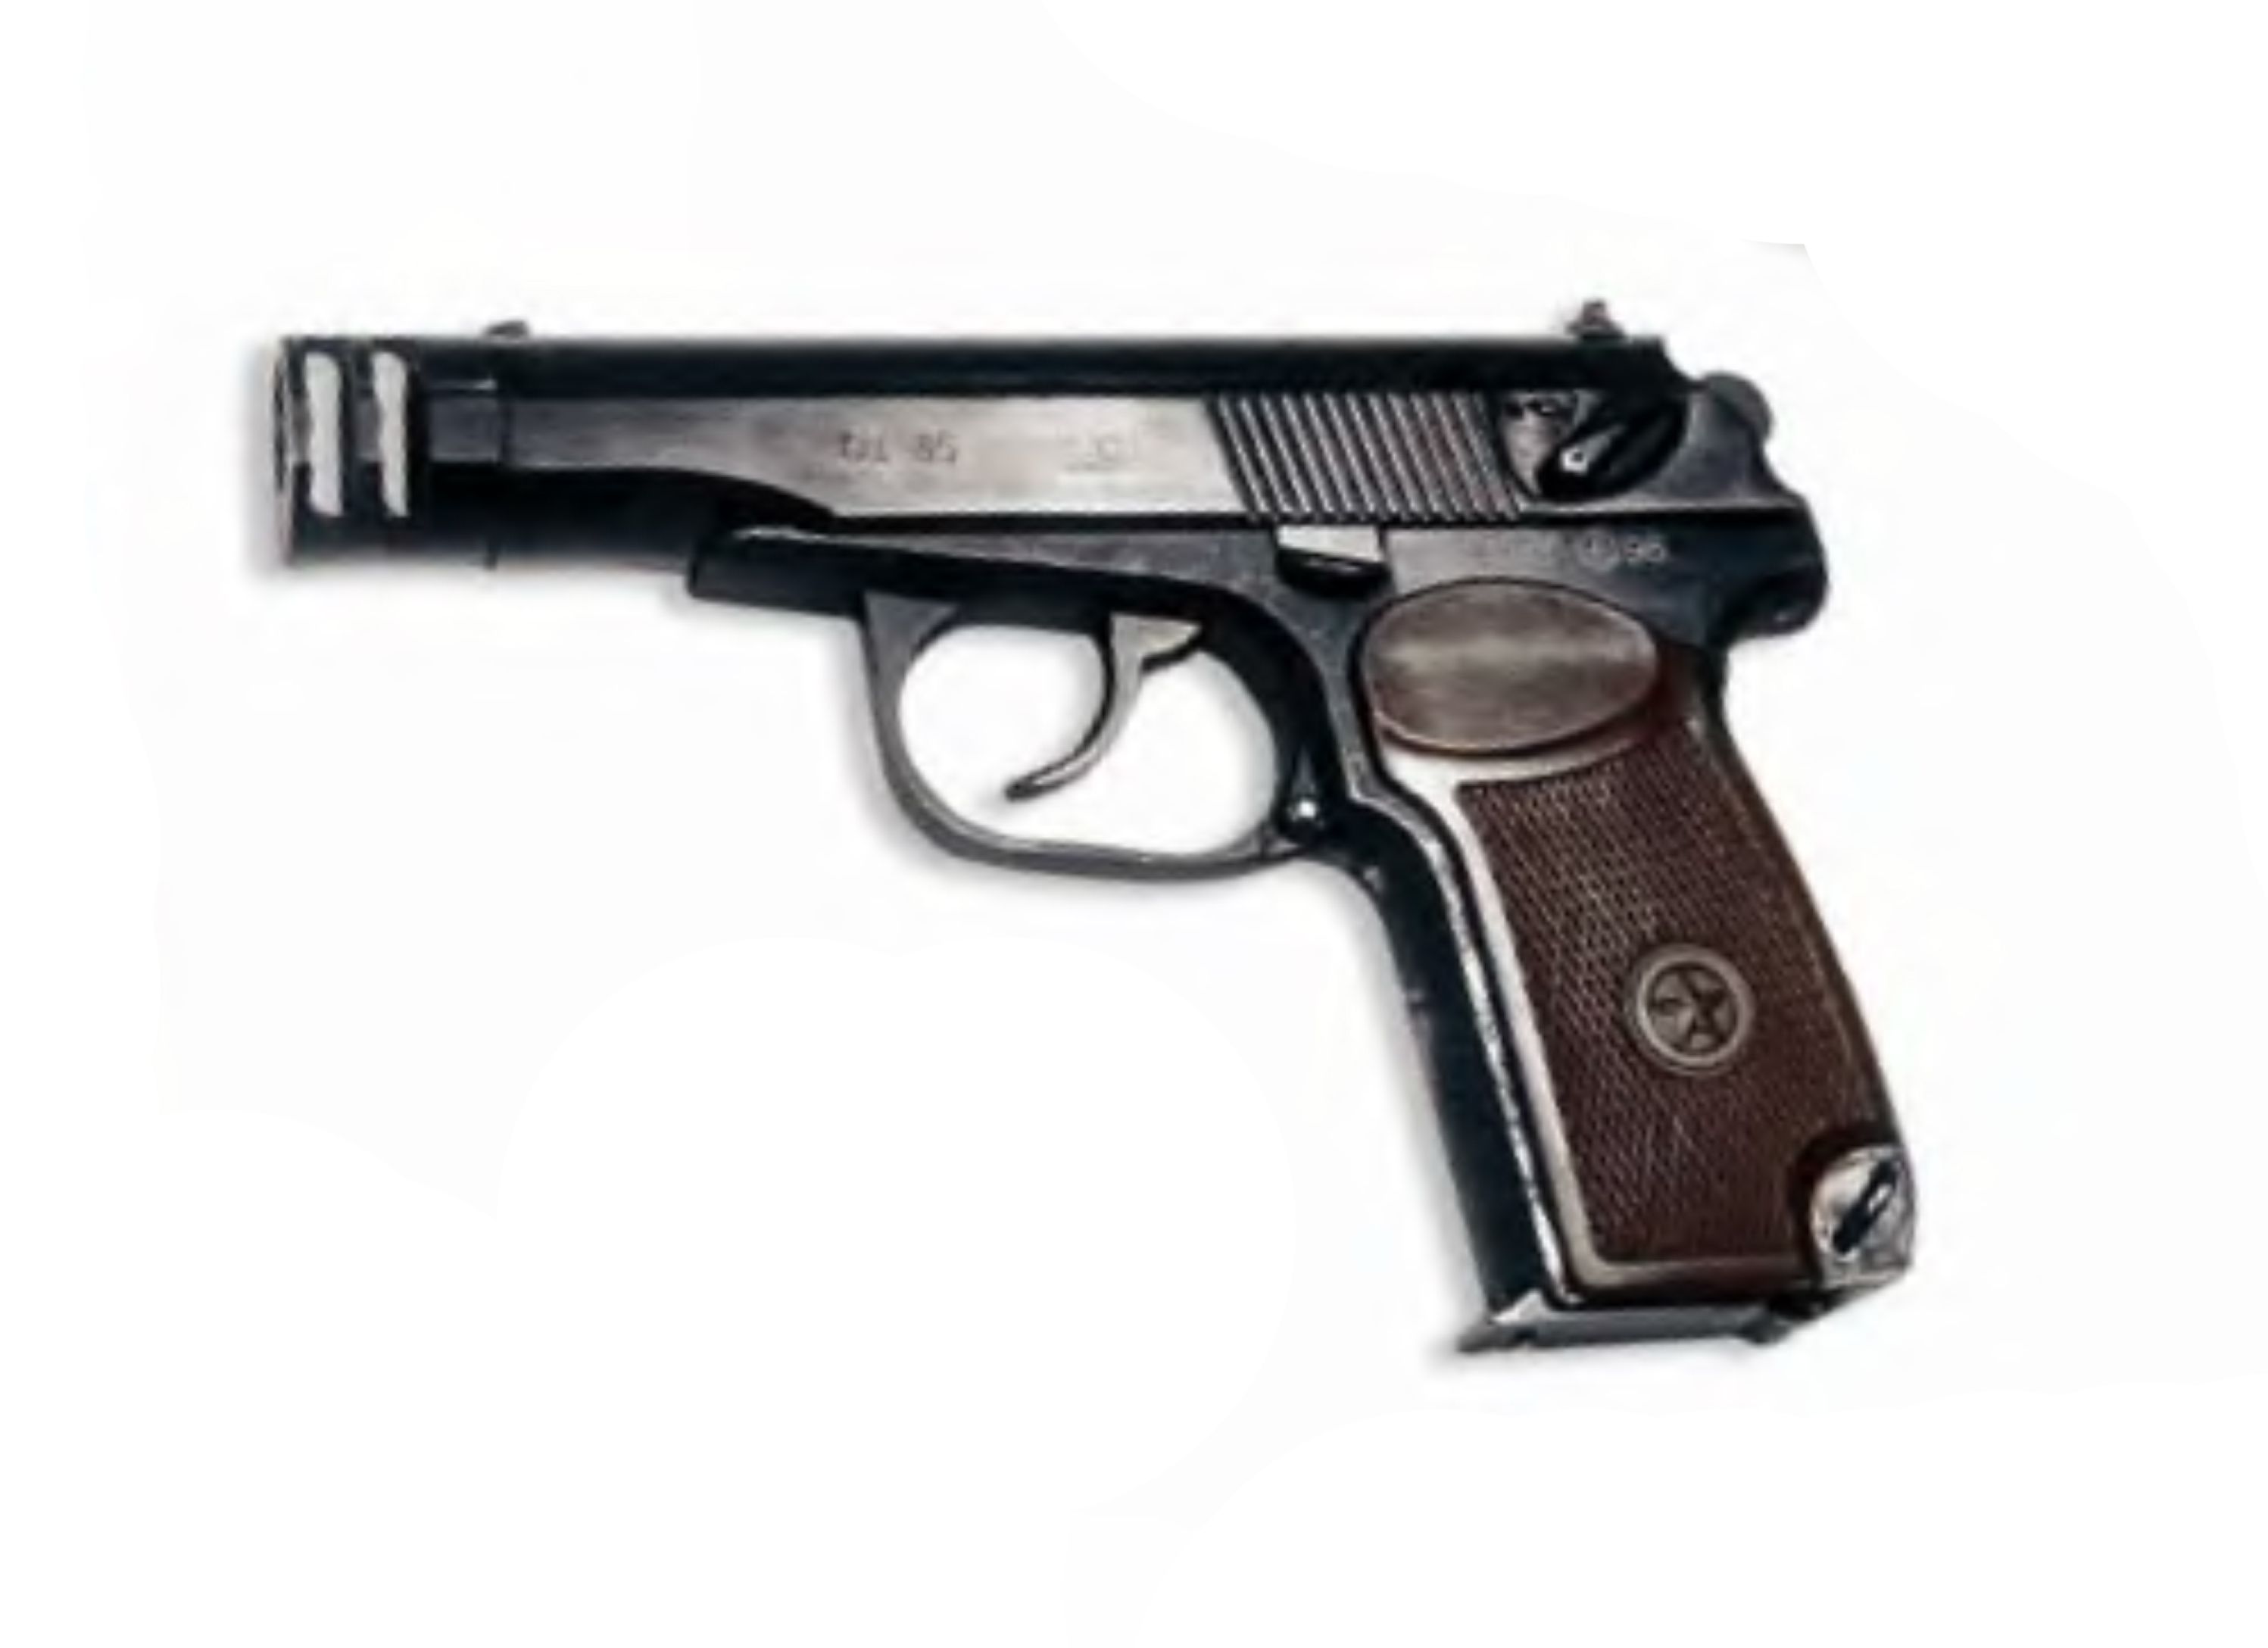 Пистолет ОЦ-35